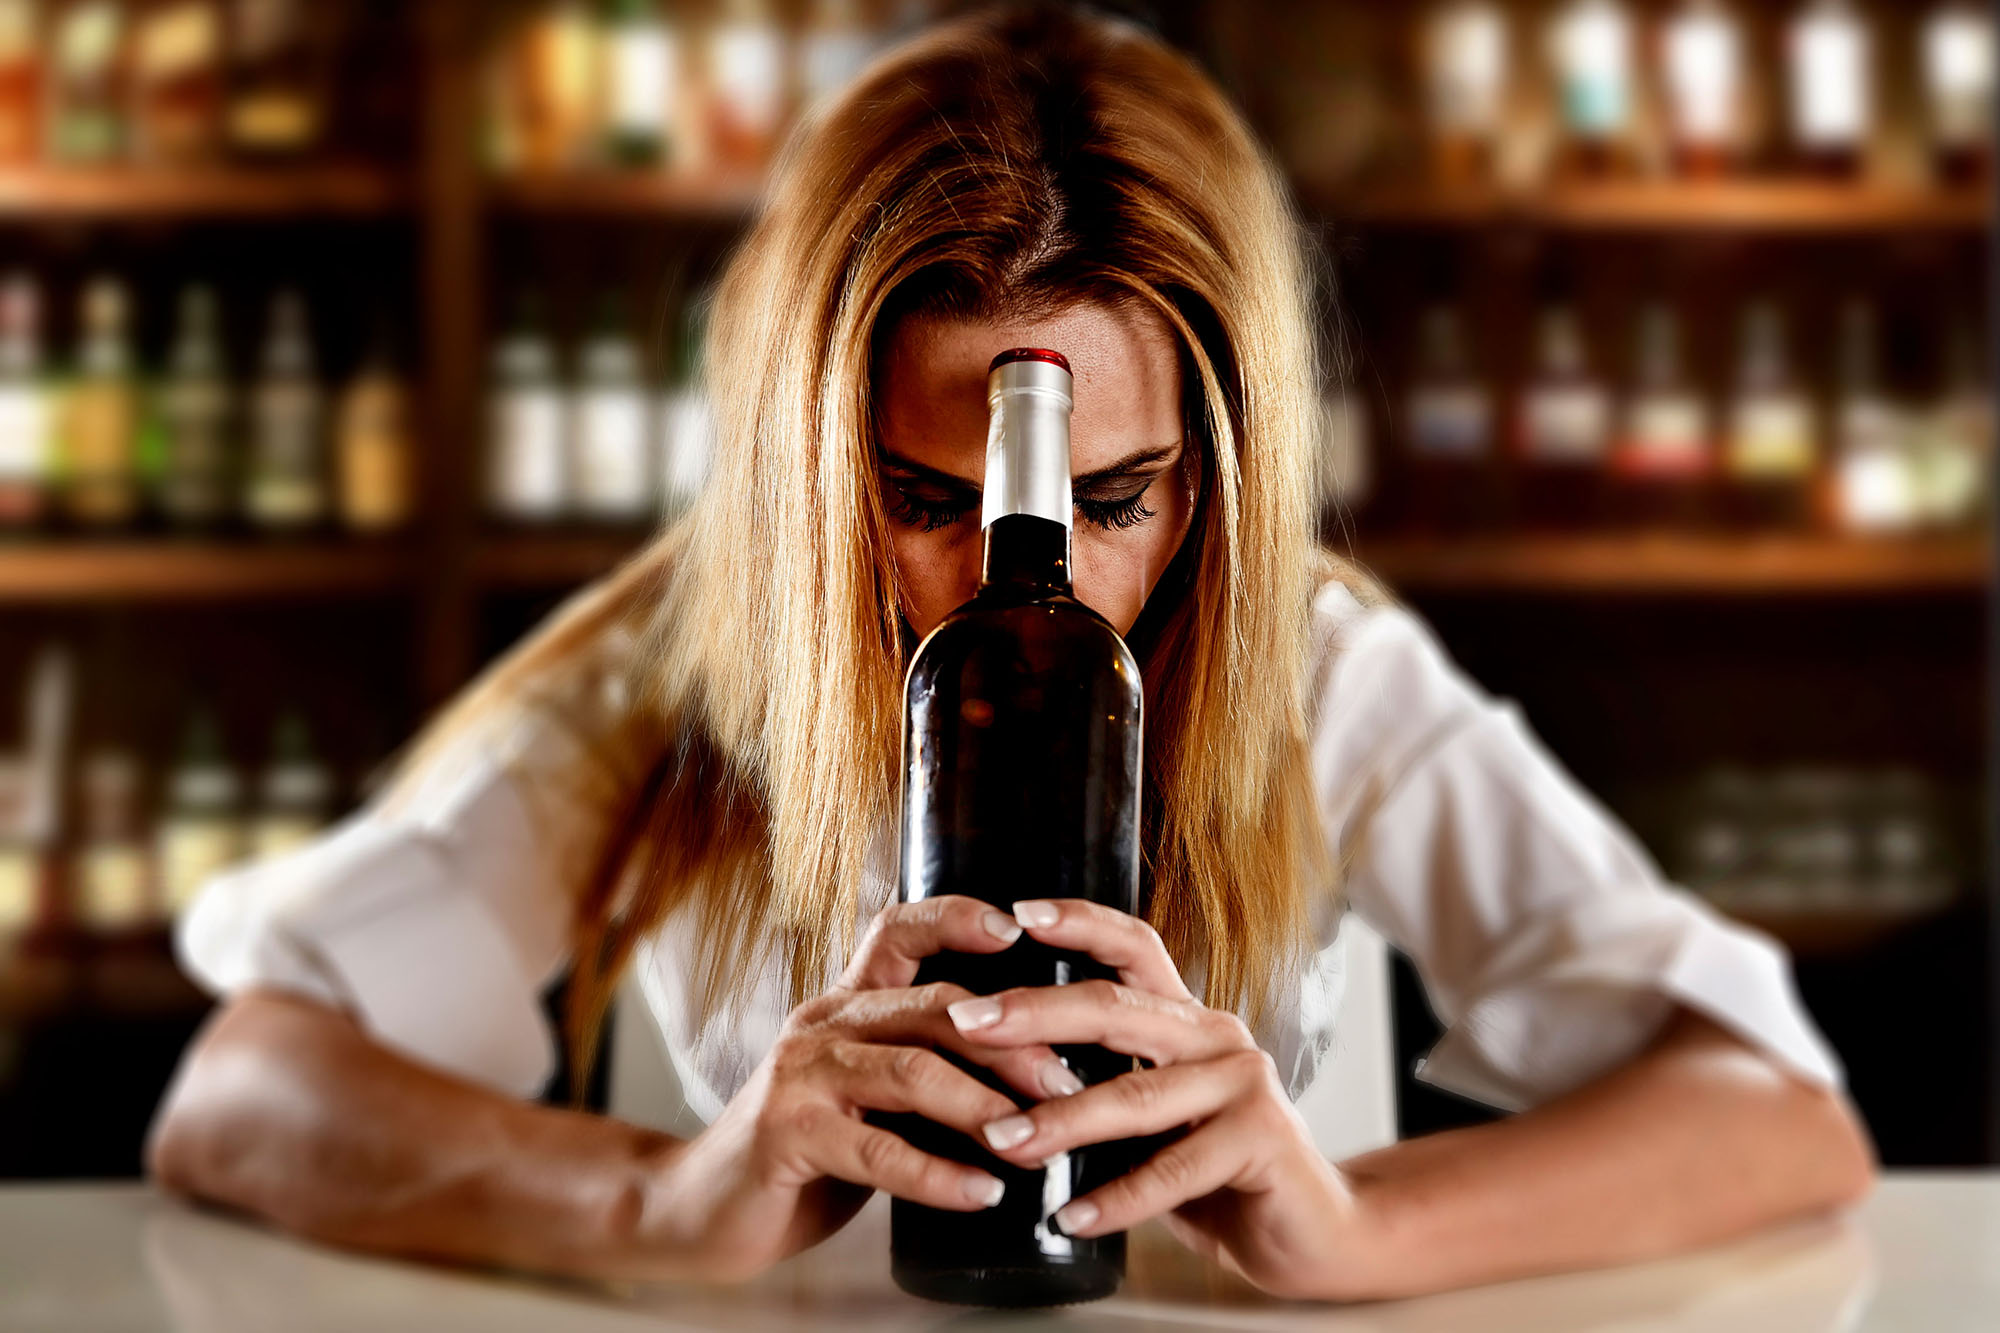 Adolescenti e binge drinking. A Pistoia i ragazzi bevono di più